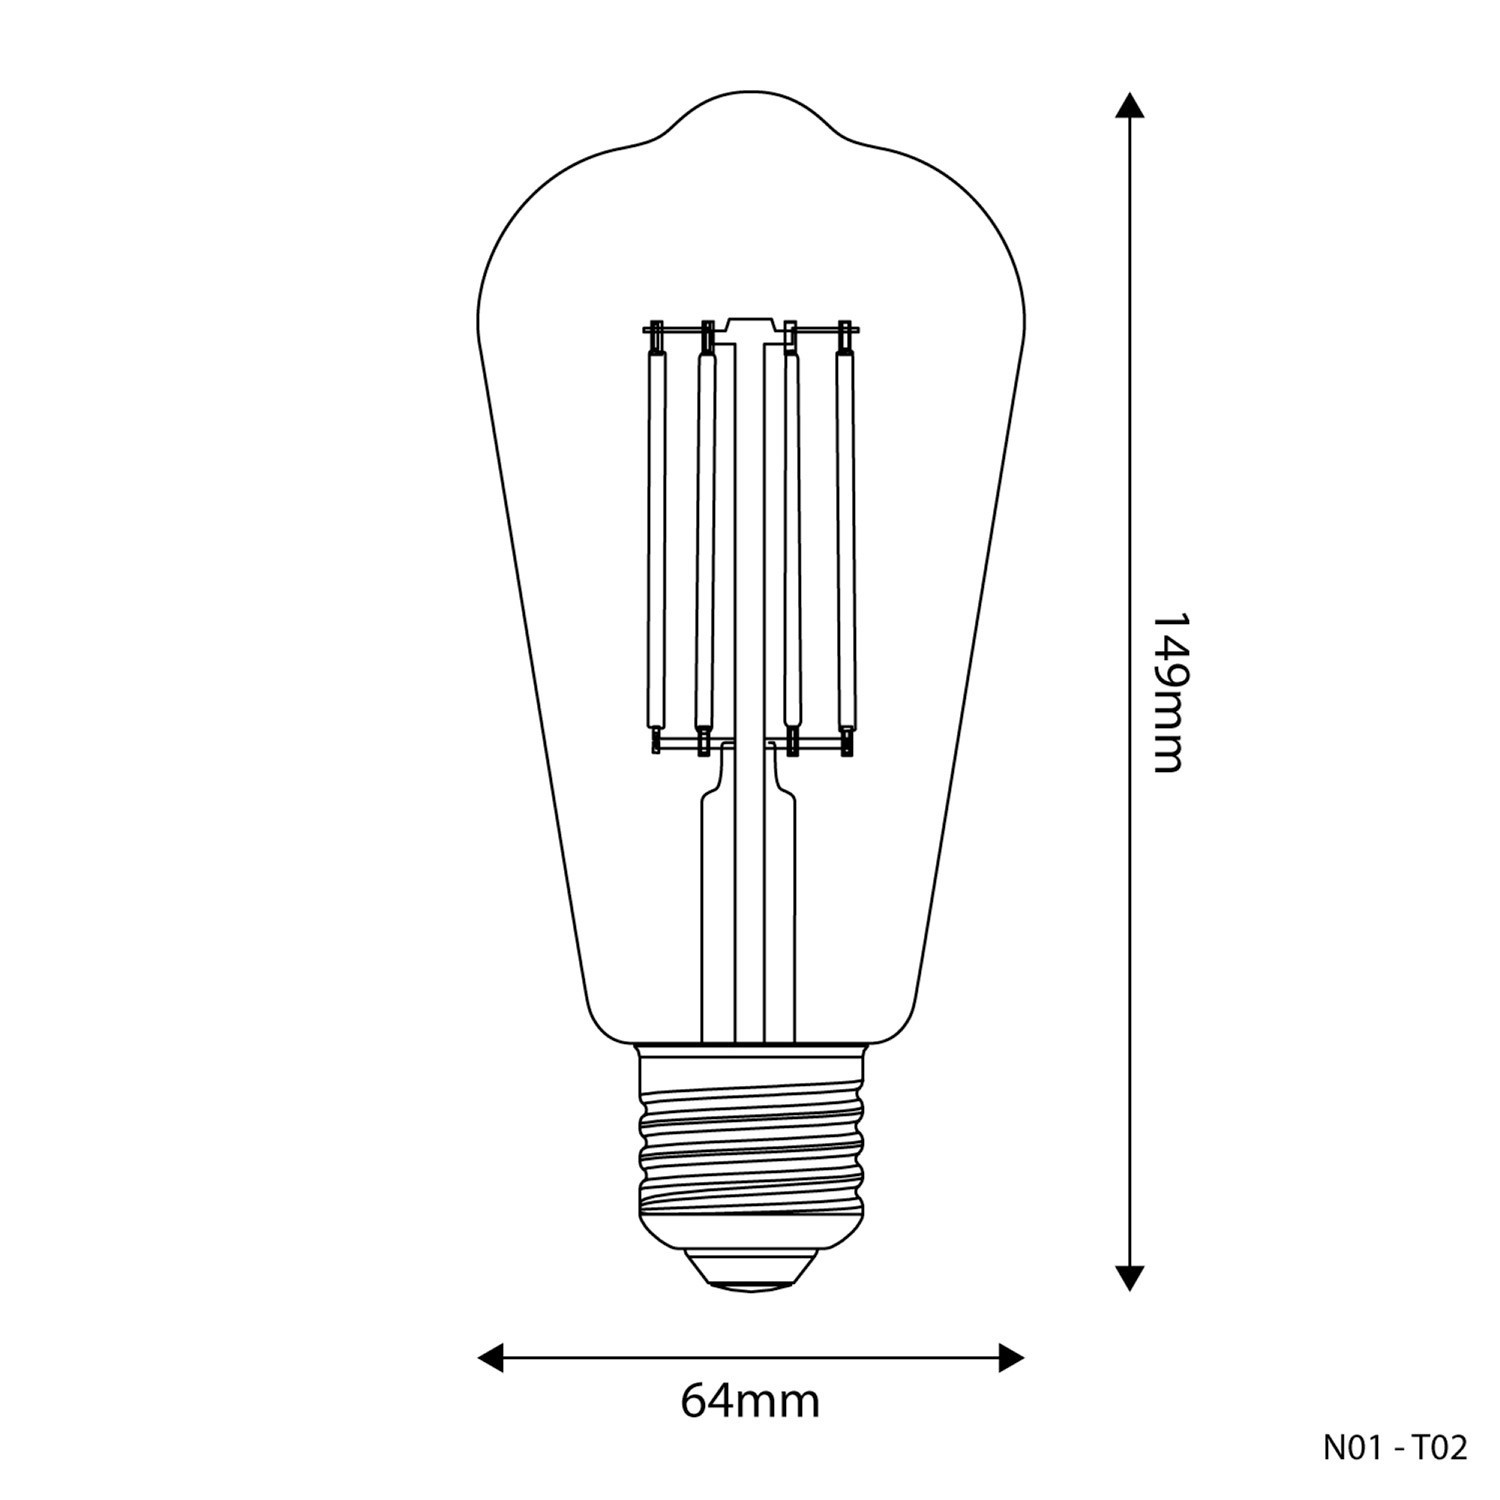 Flex 60 applique ou plafonnier articulé à lumière diffuse avec ampoule LED G95